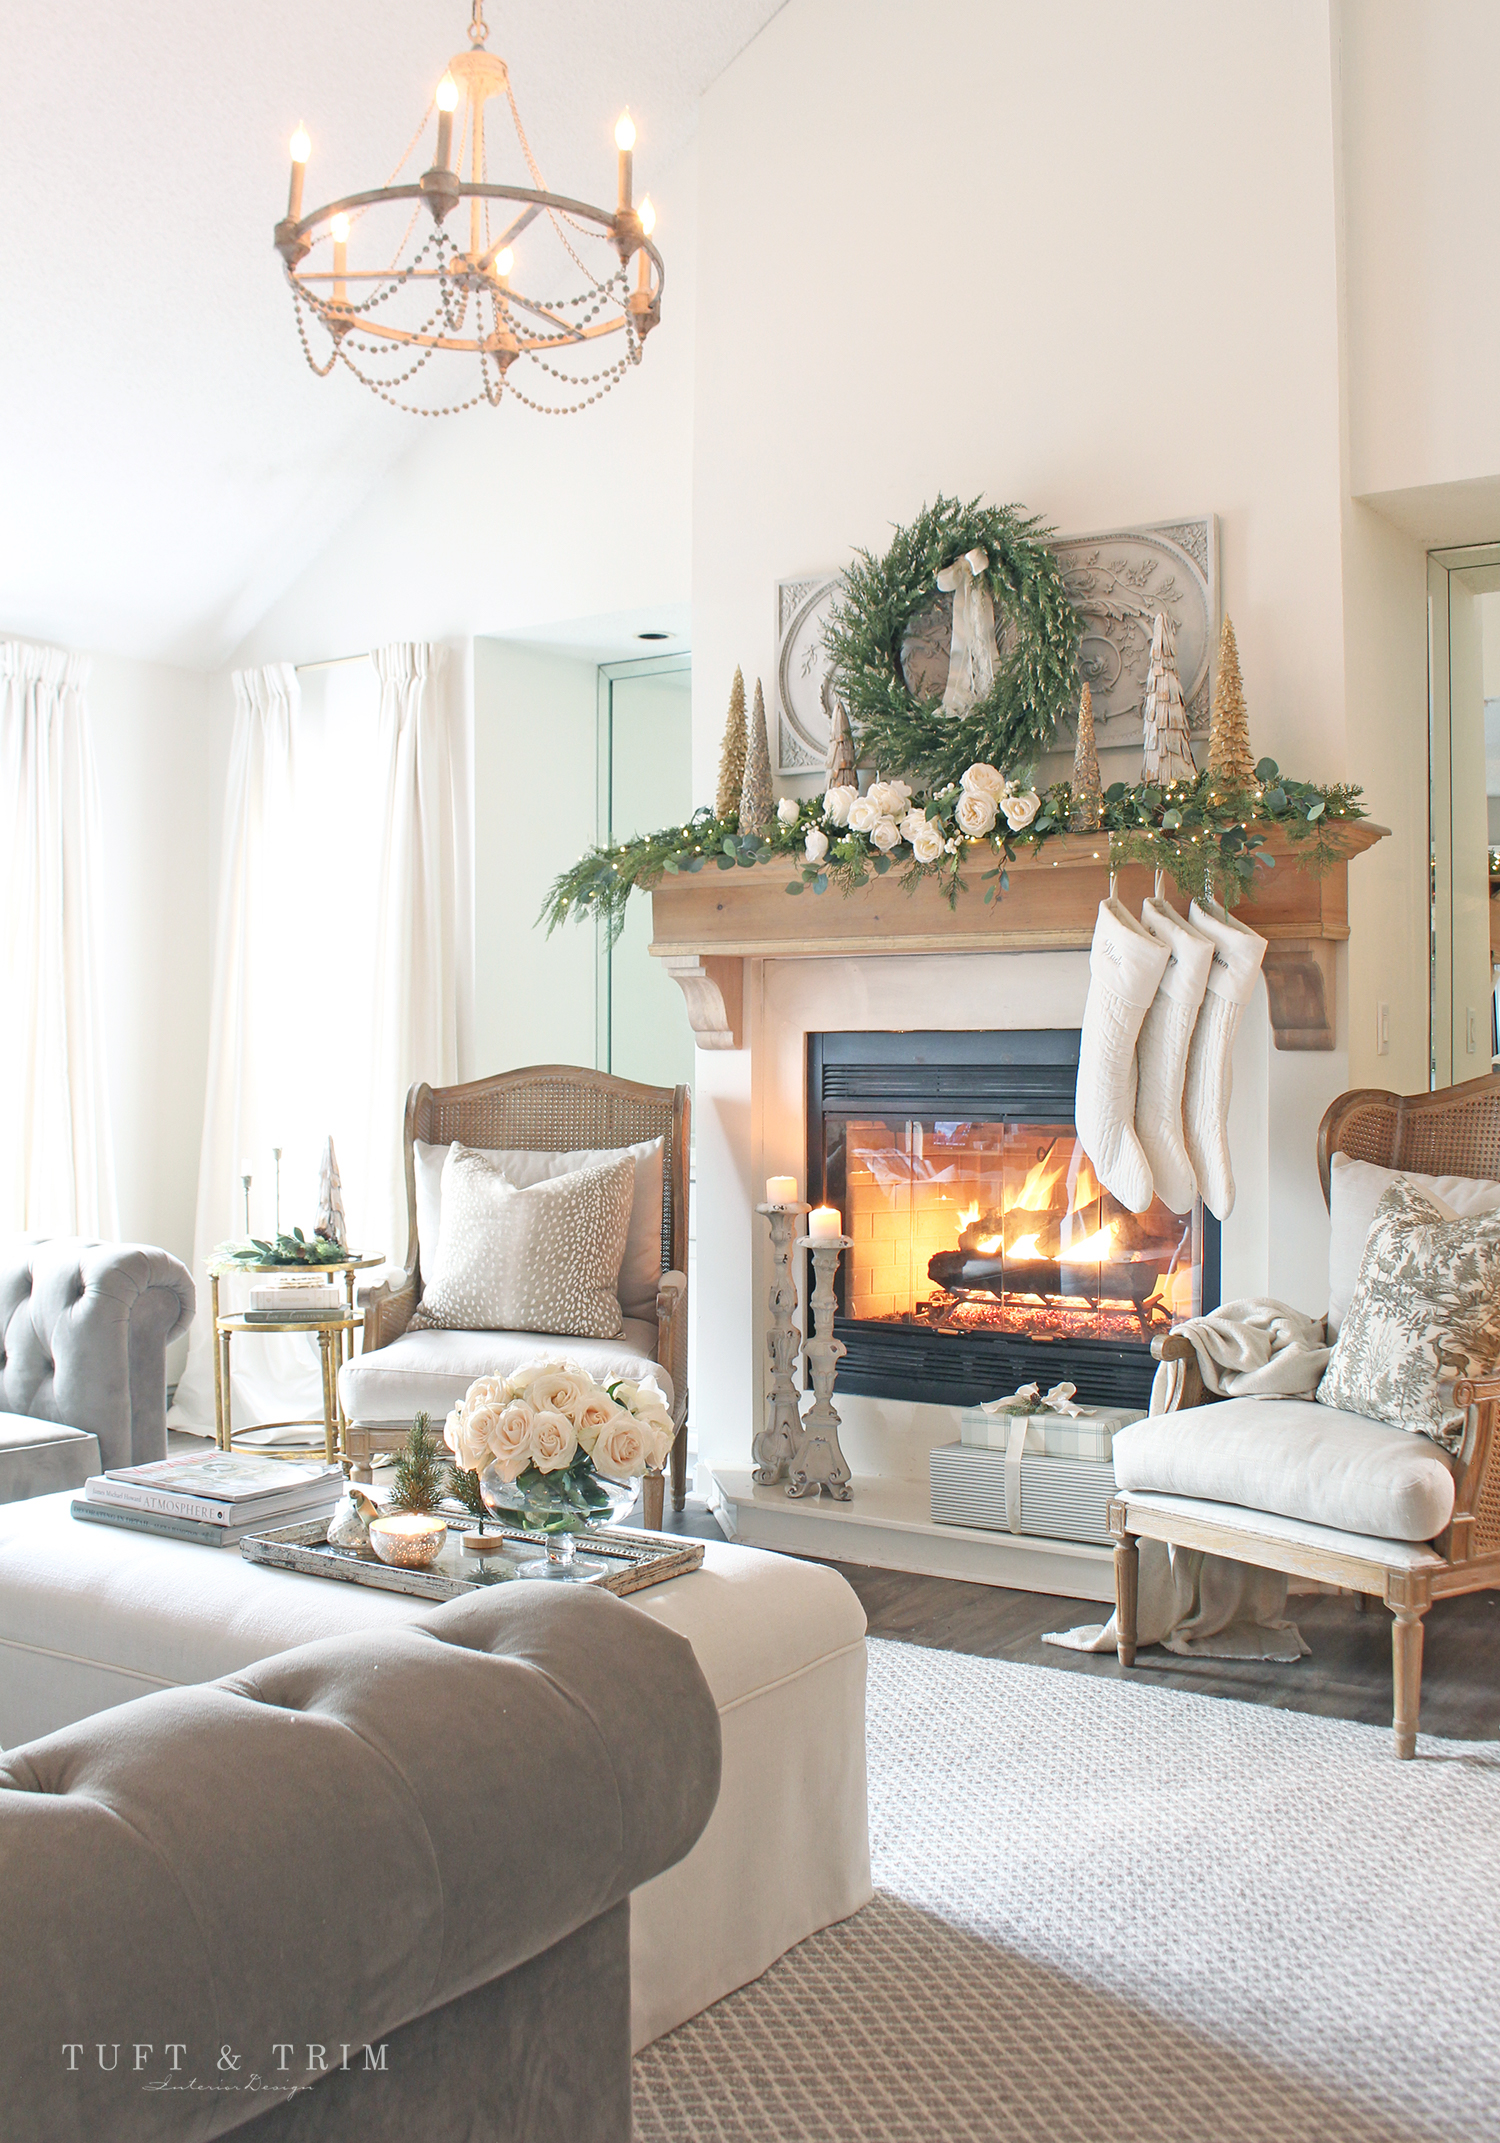 Classic Christmas Home Tour 2020 with Tuft & Trim Interior Design